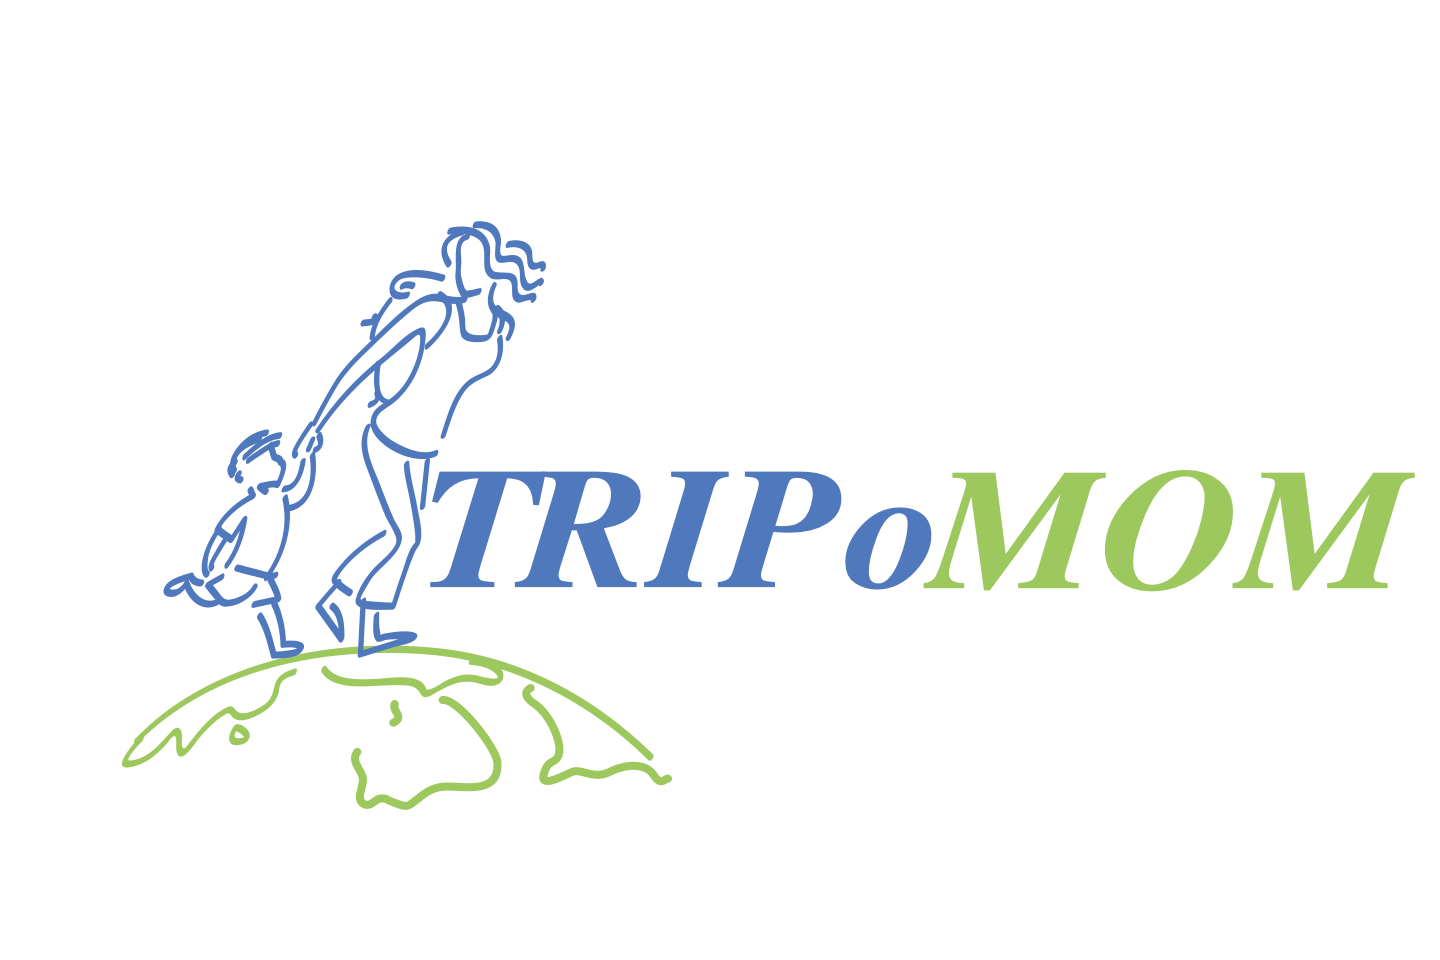 Tripomom logo